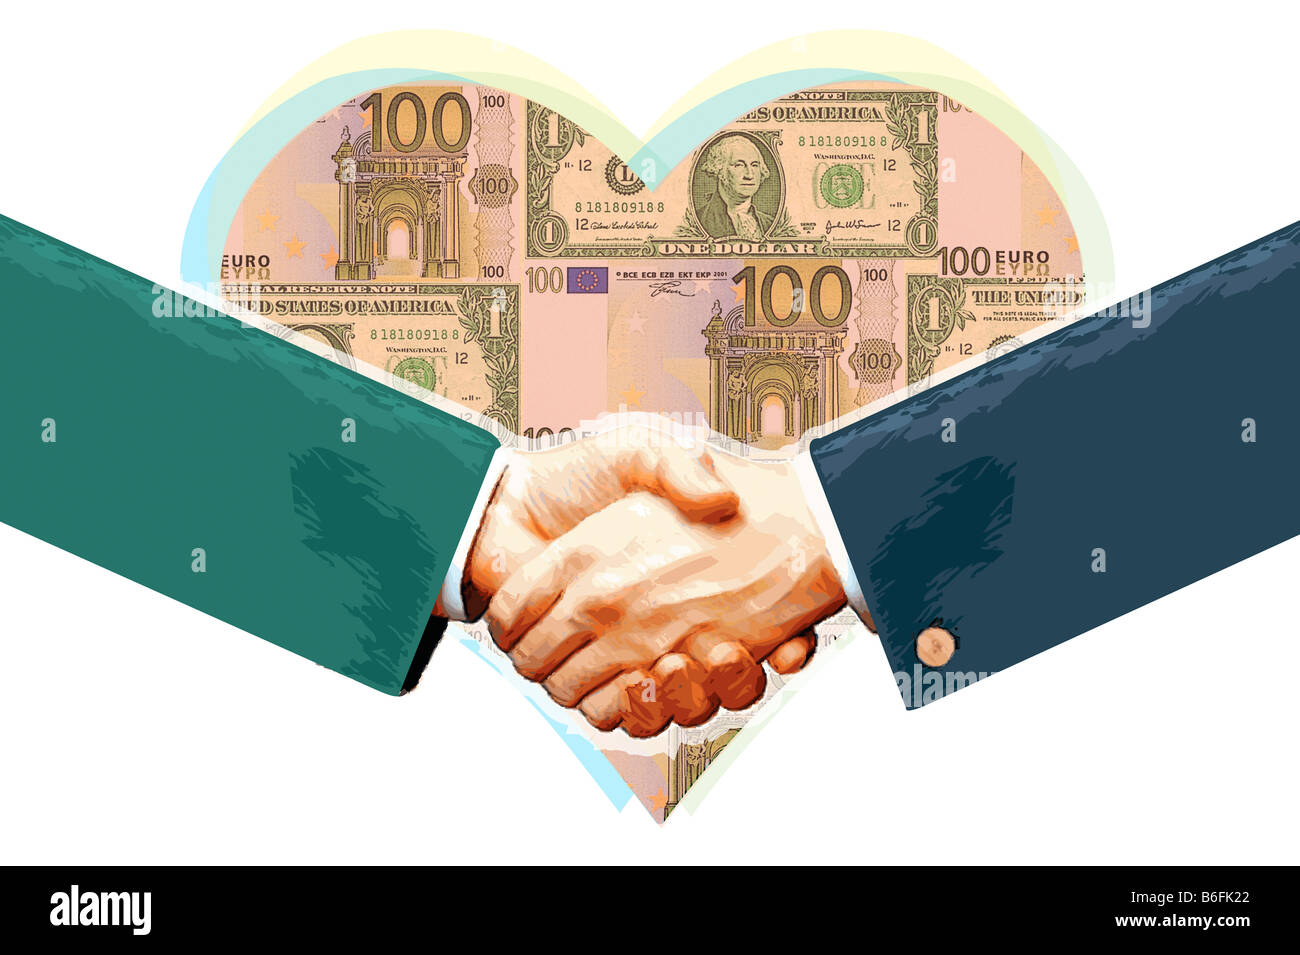 Abbildung, Händeschütteln vor herzförmigen Banknoten, Finanzen Regeln Stockfoto